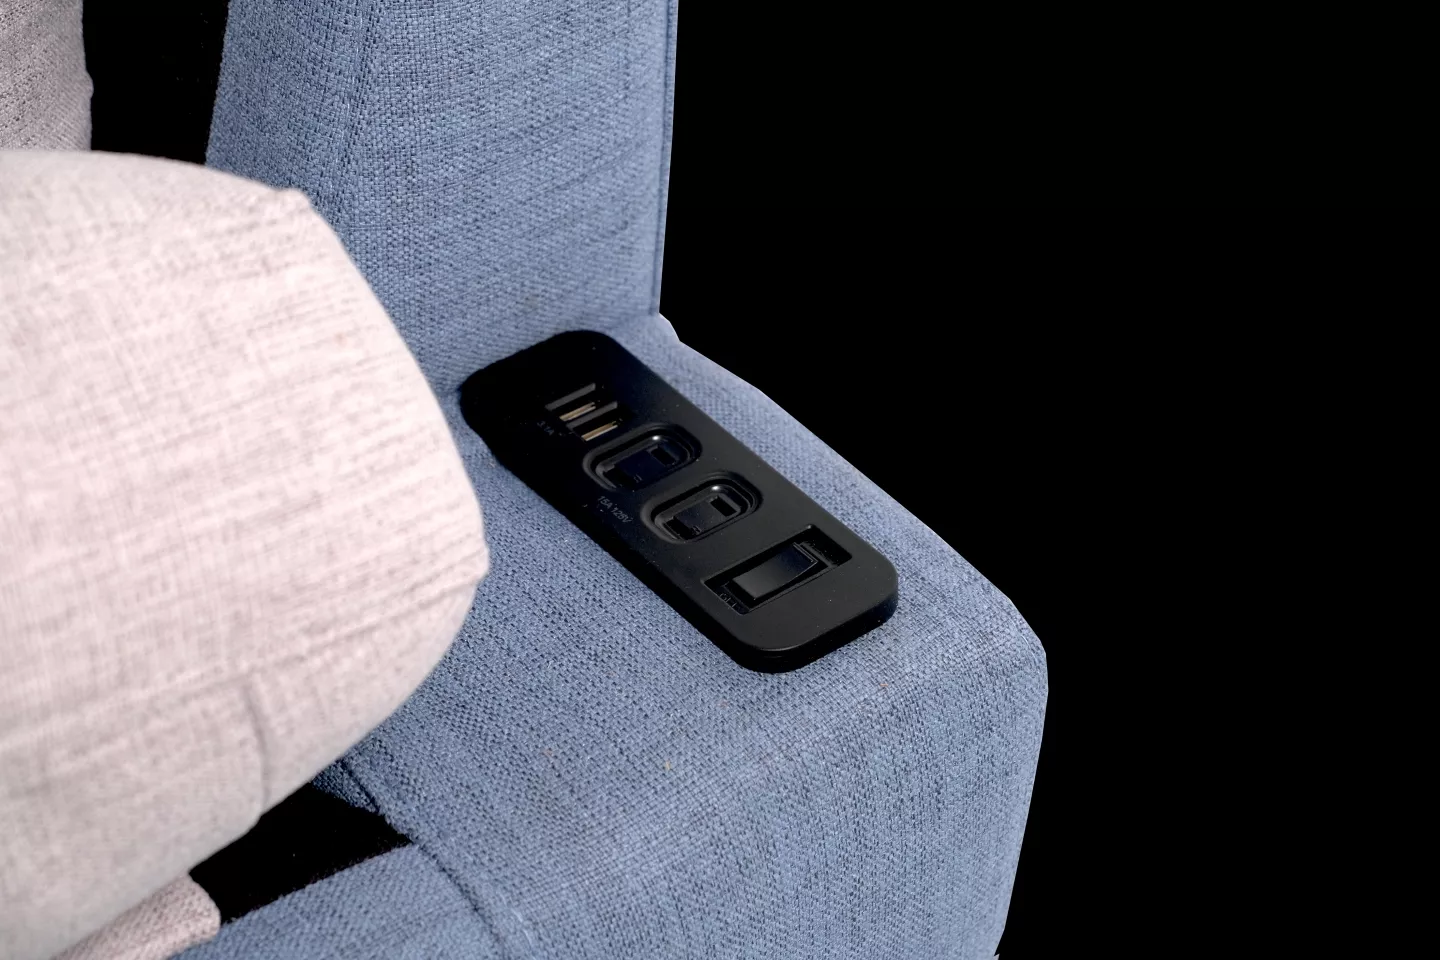 棉麻布沙發,蒂尼TINI T53型沙發細節照片含有USB充電孔及兩孔插座充電孔